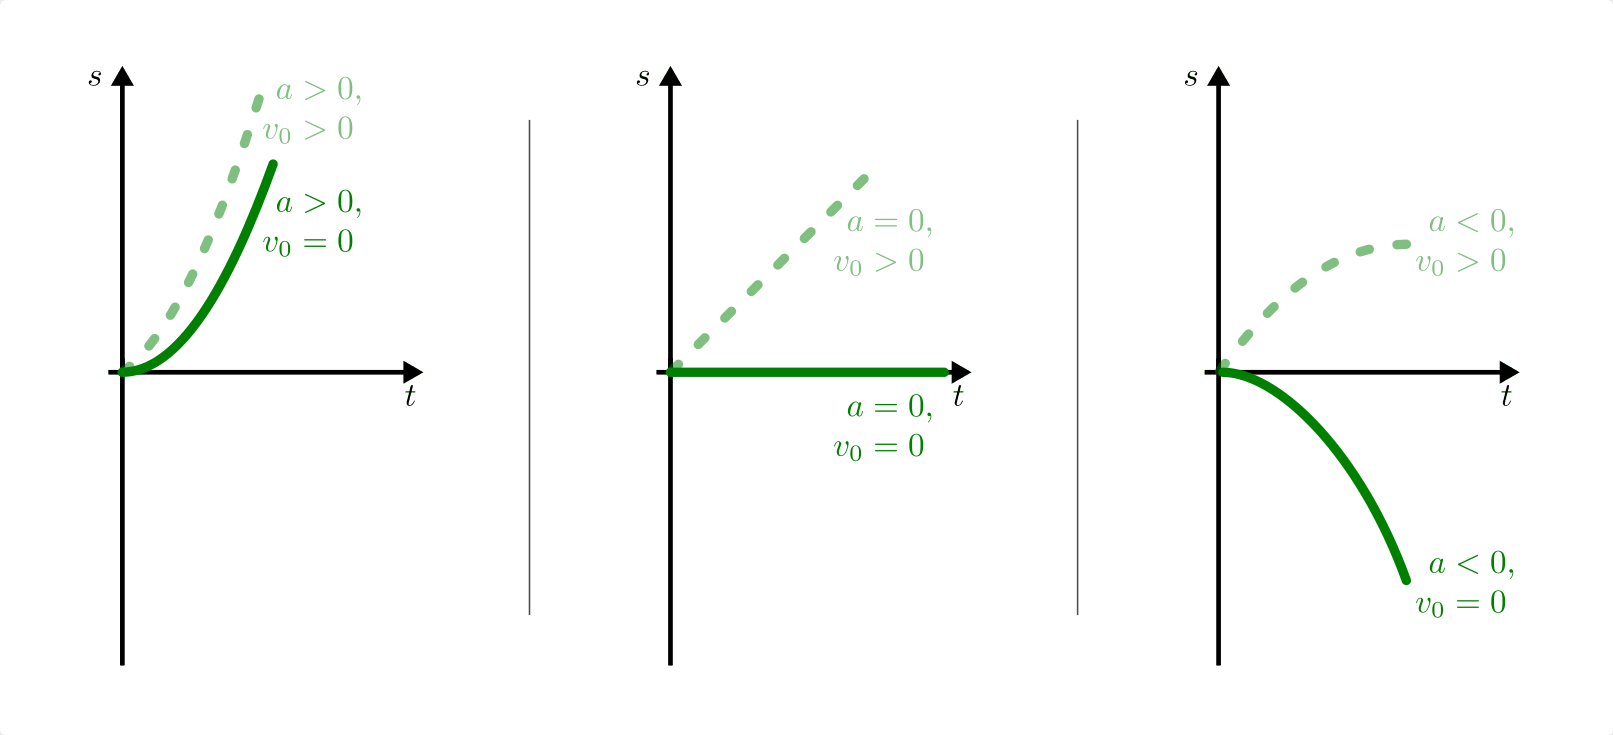 fig-s-t-diagramm-konstante-beschleunigung